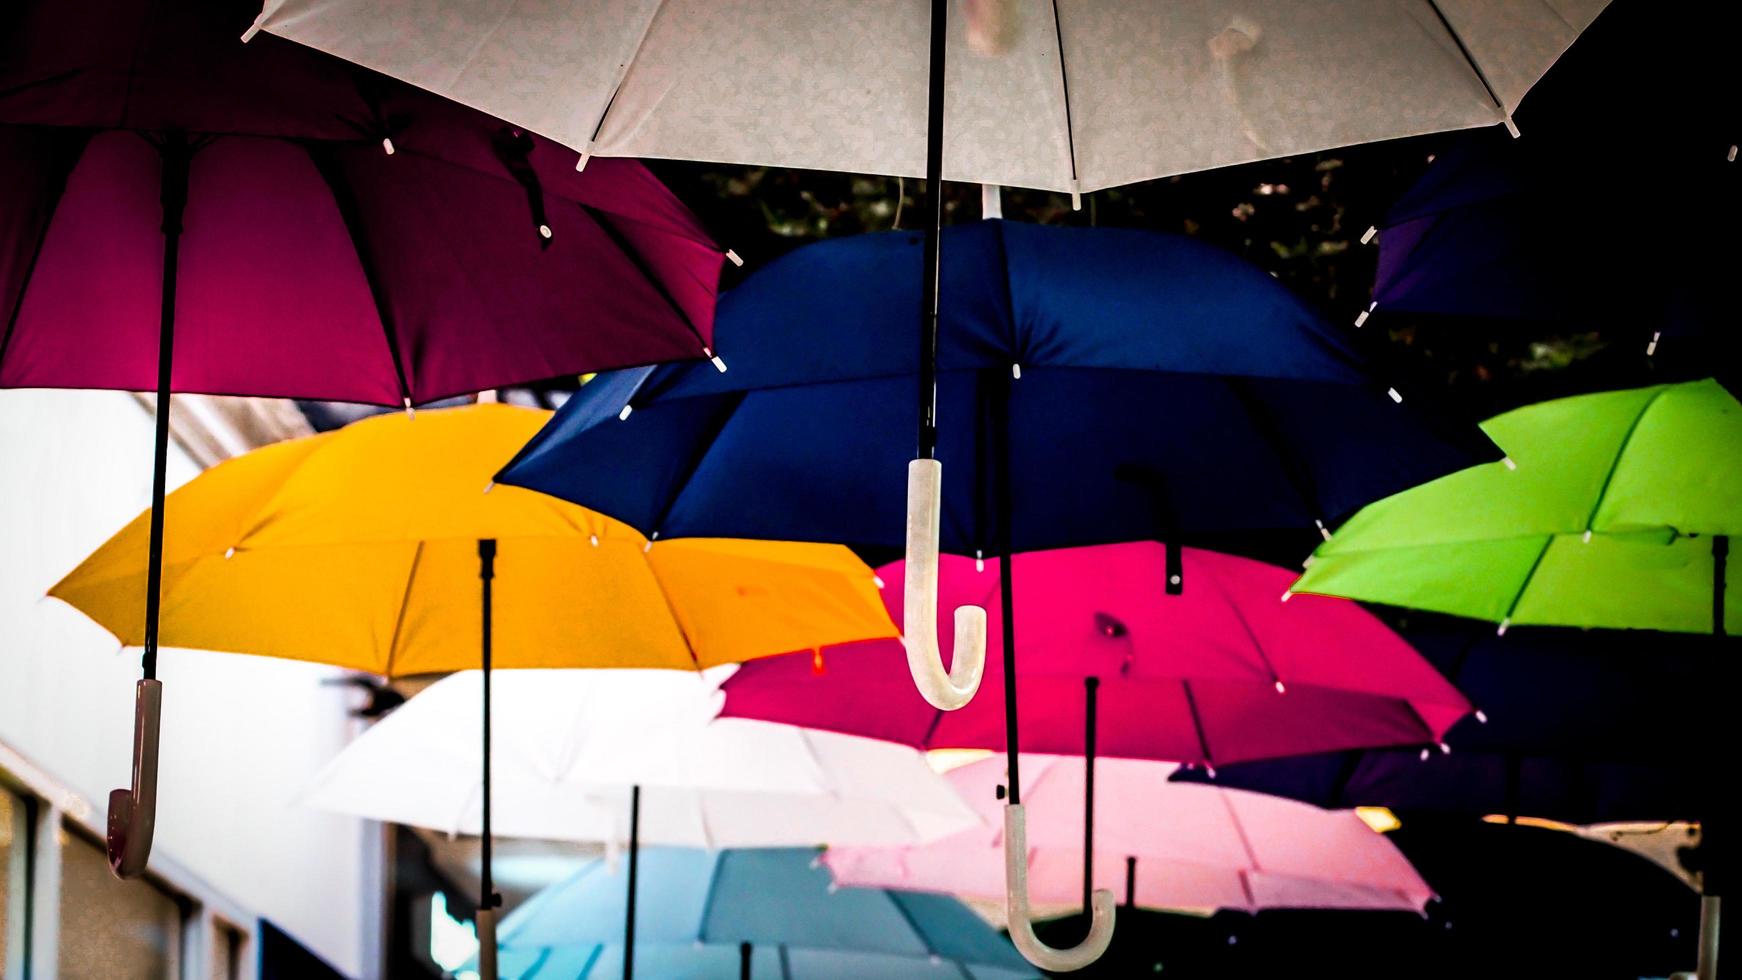 calle decorada con sombrillas de colores. muchos paraguas coloreando el cielo de la ciudad foto